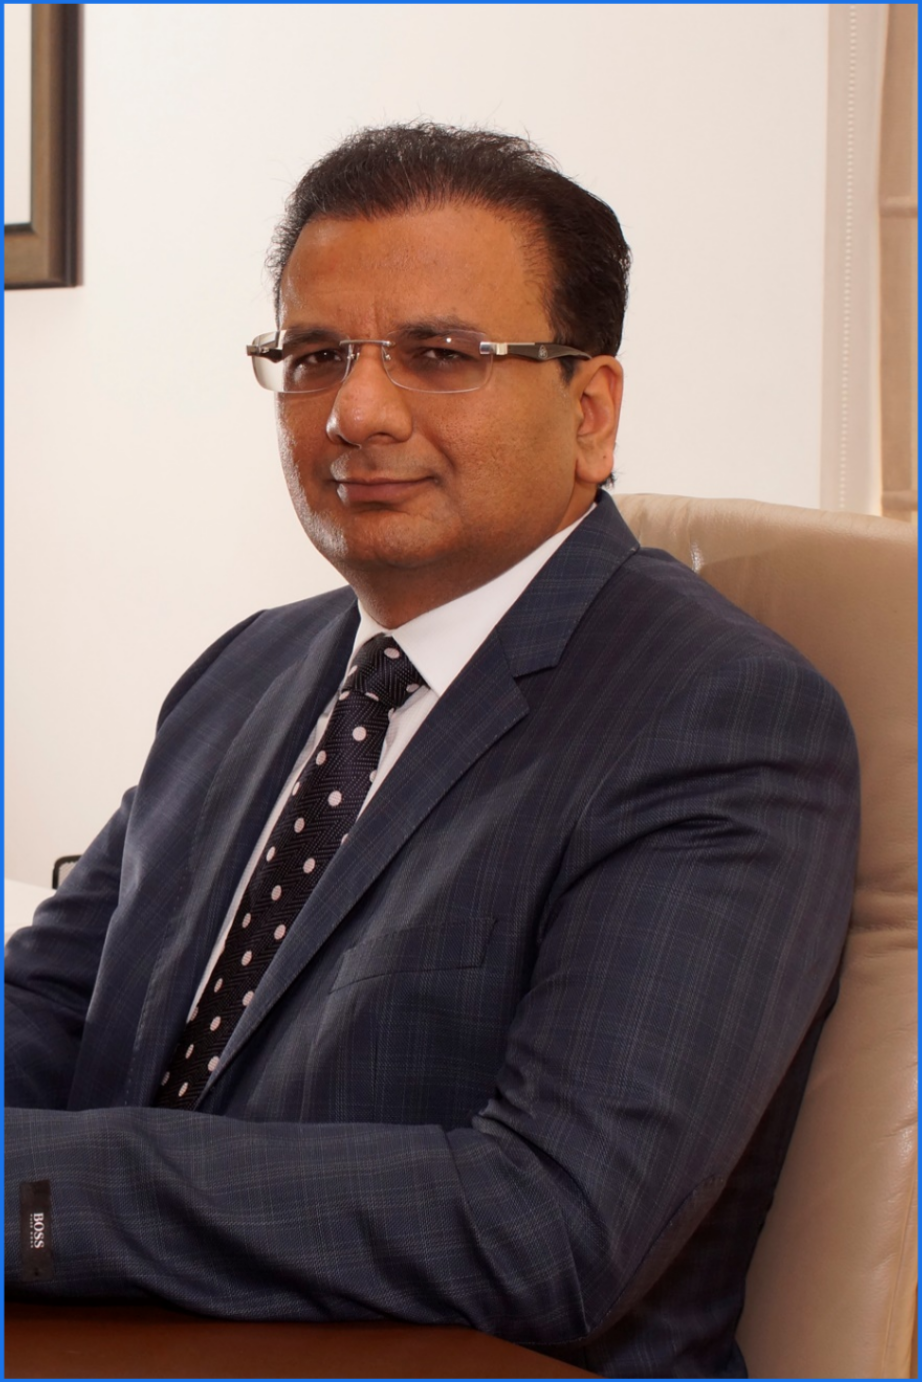 Sudhir Mehta Serial Entrepreneur  Chairman & Managing Director, Pinnacle Industries Limited Past Chairman, CII-Western Region  Twitter - @sudhirmehtapune 